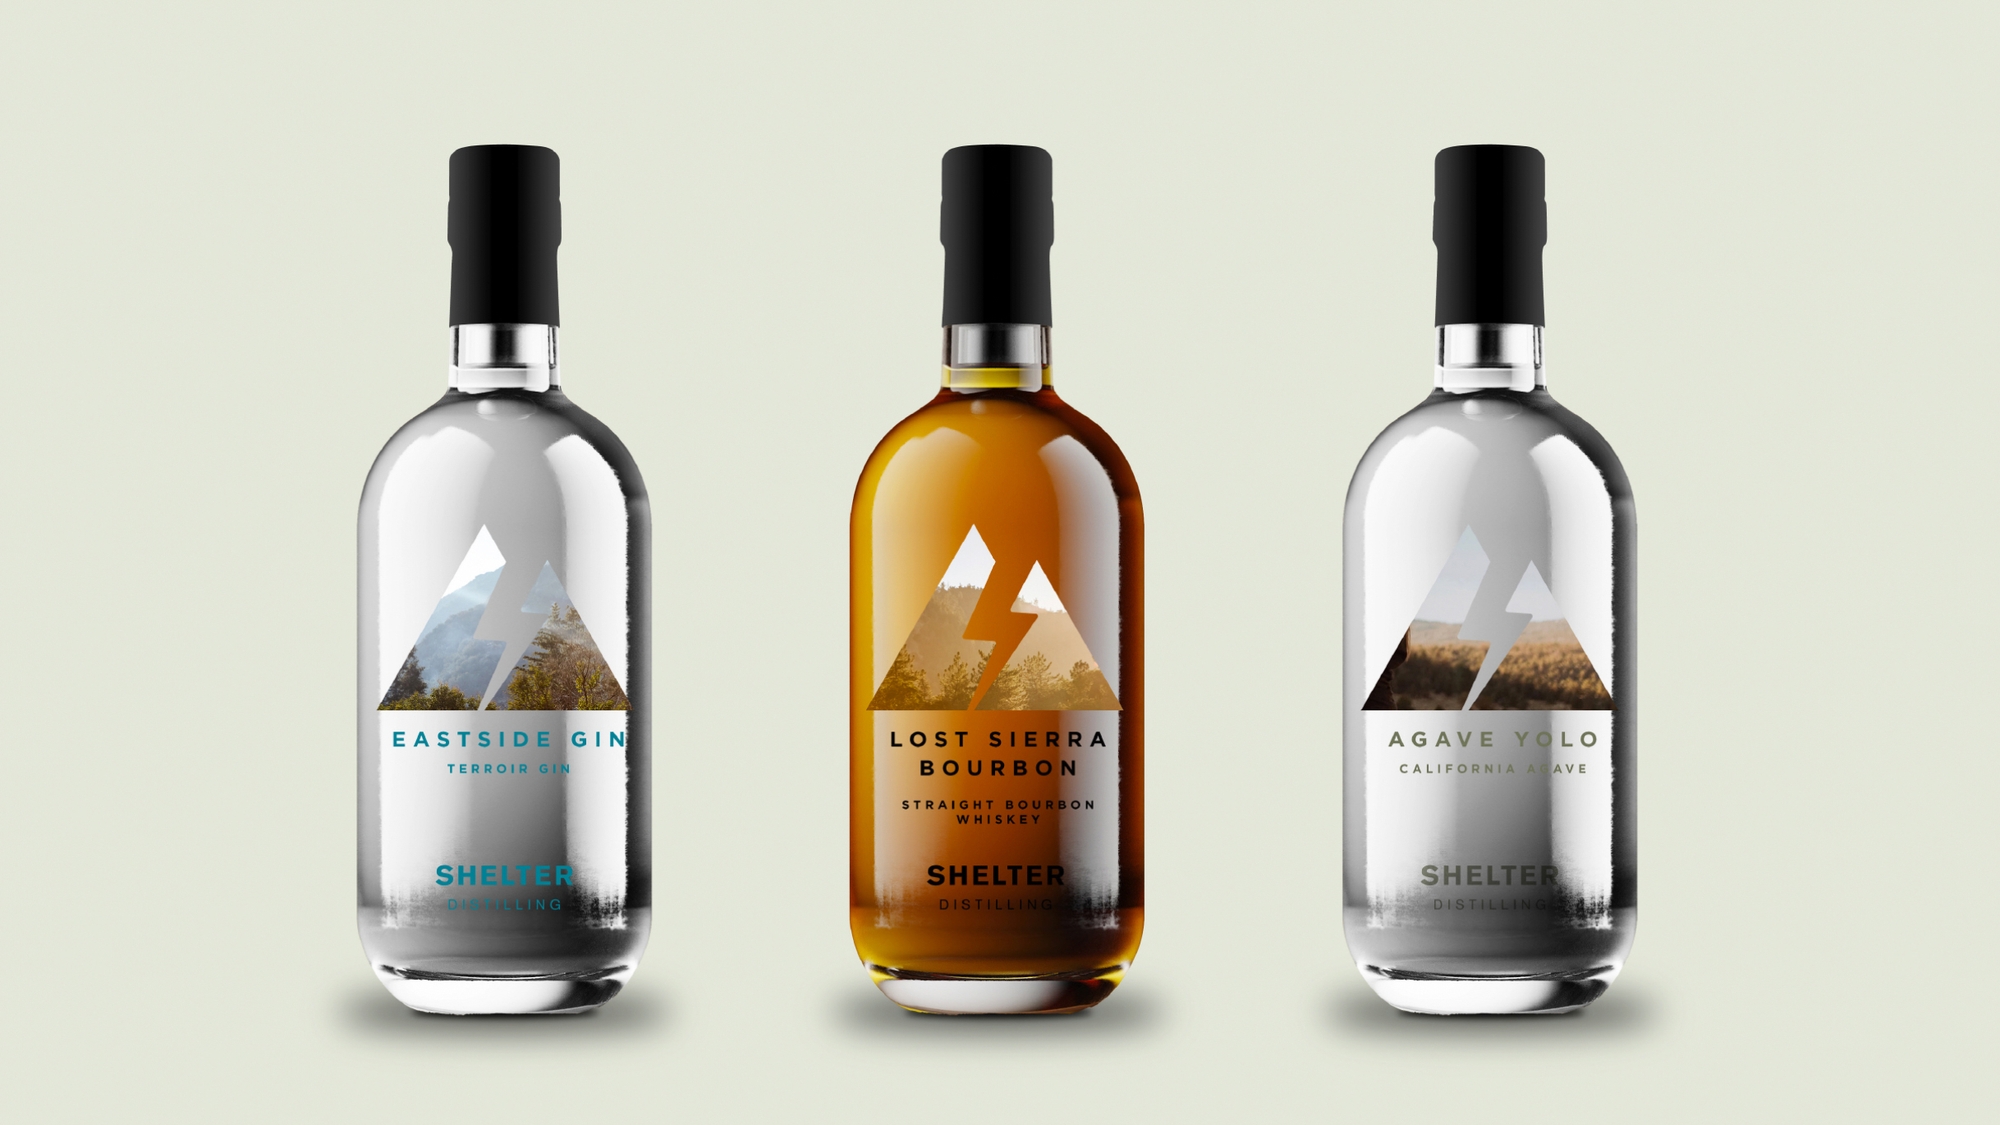 Shelter Distilling bottle designs